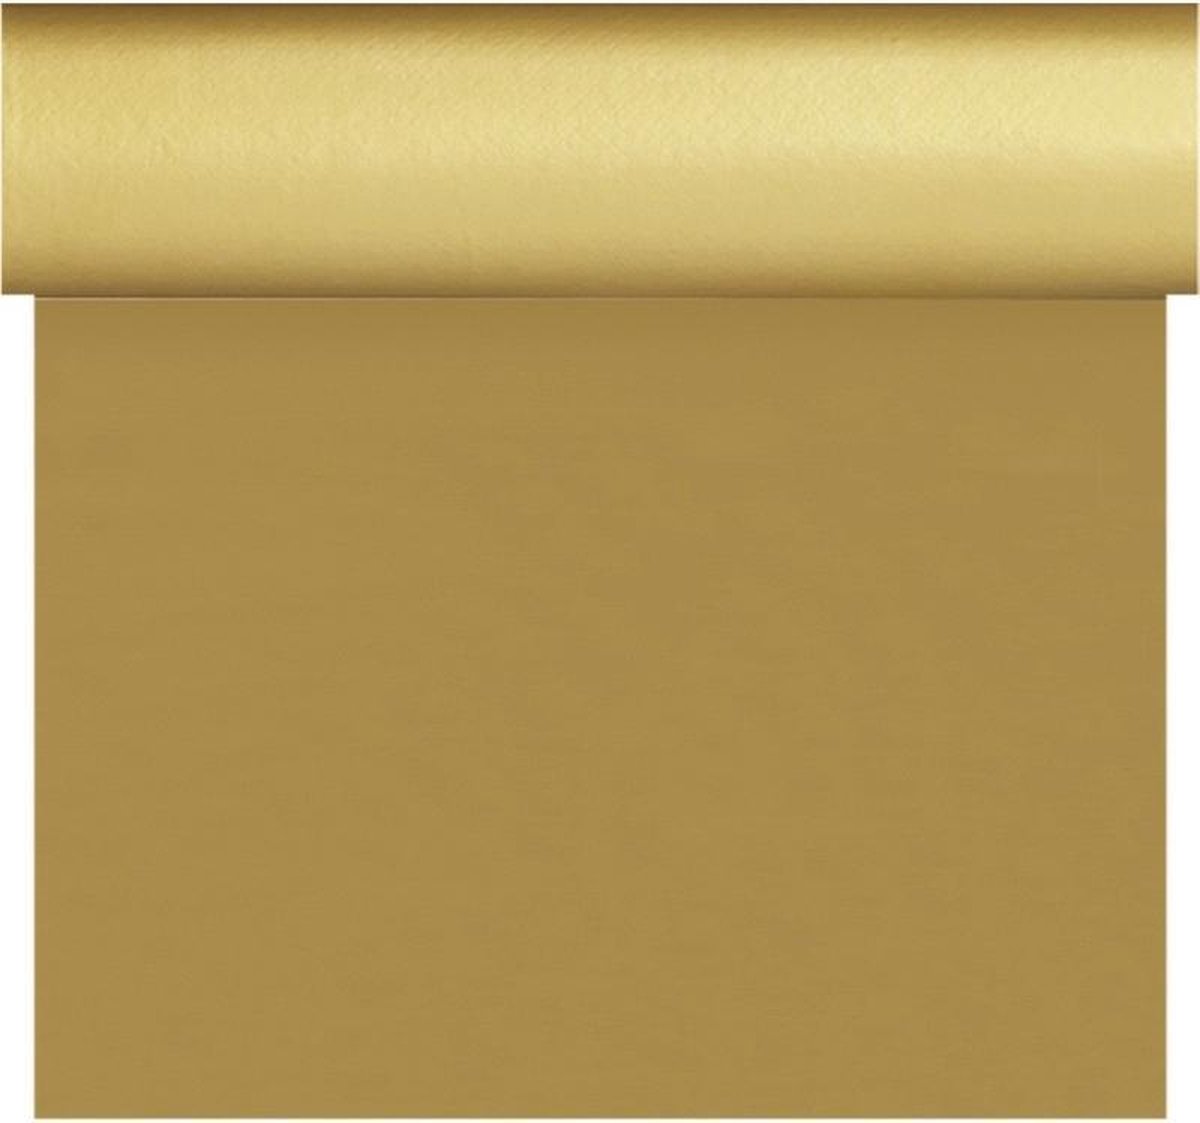 Bruiloft/huwelijk gouden tafelloper/placemats 40 x 480 cm - Thema goud - Trouwerij tafeldecoraties/versieringen